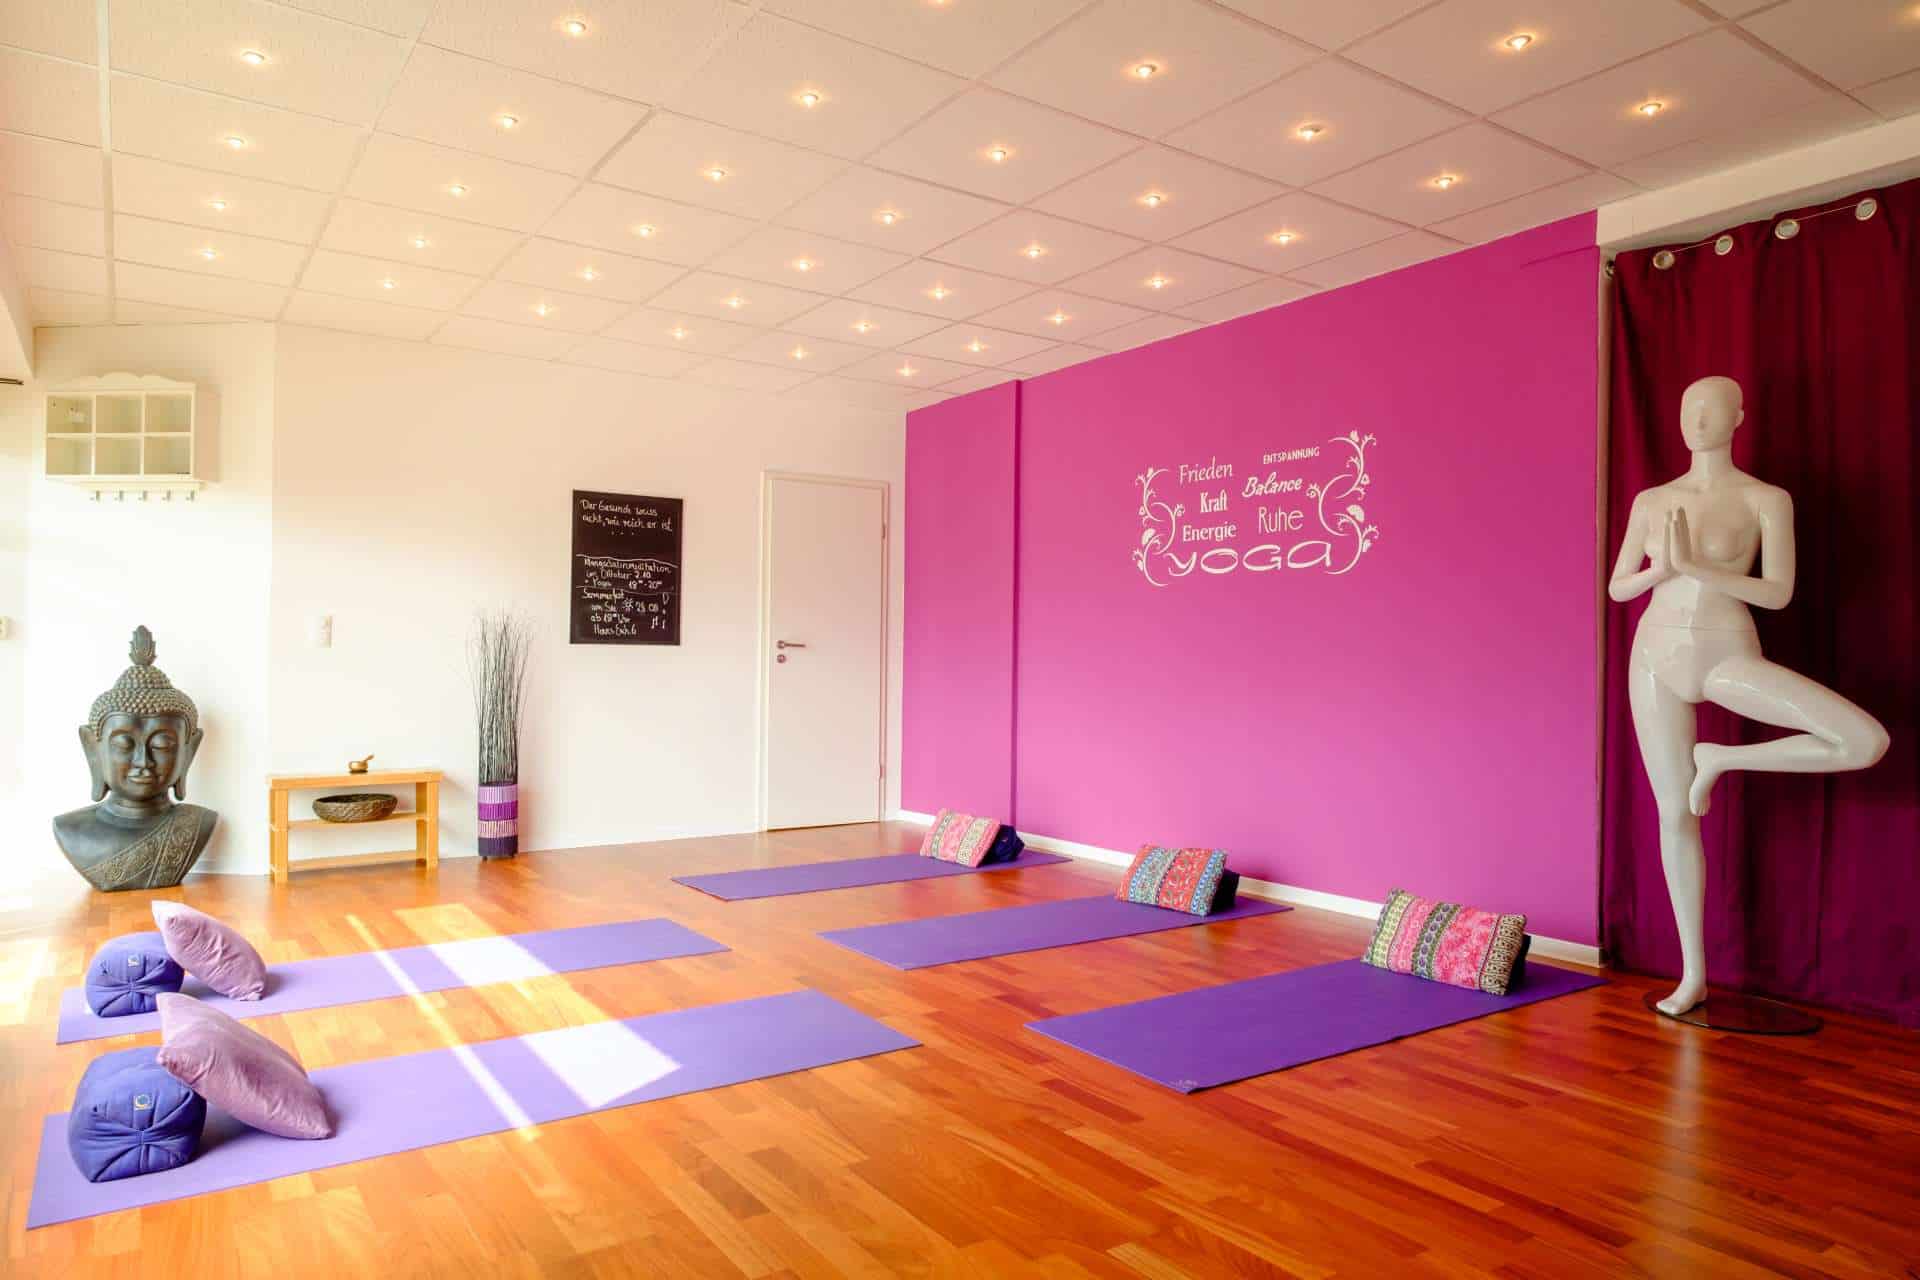 Tripada Yoga jetzt auch in Bocholt – Eröffnung